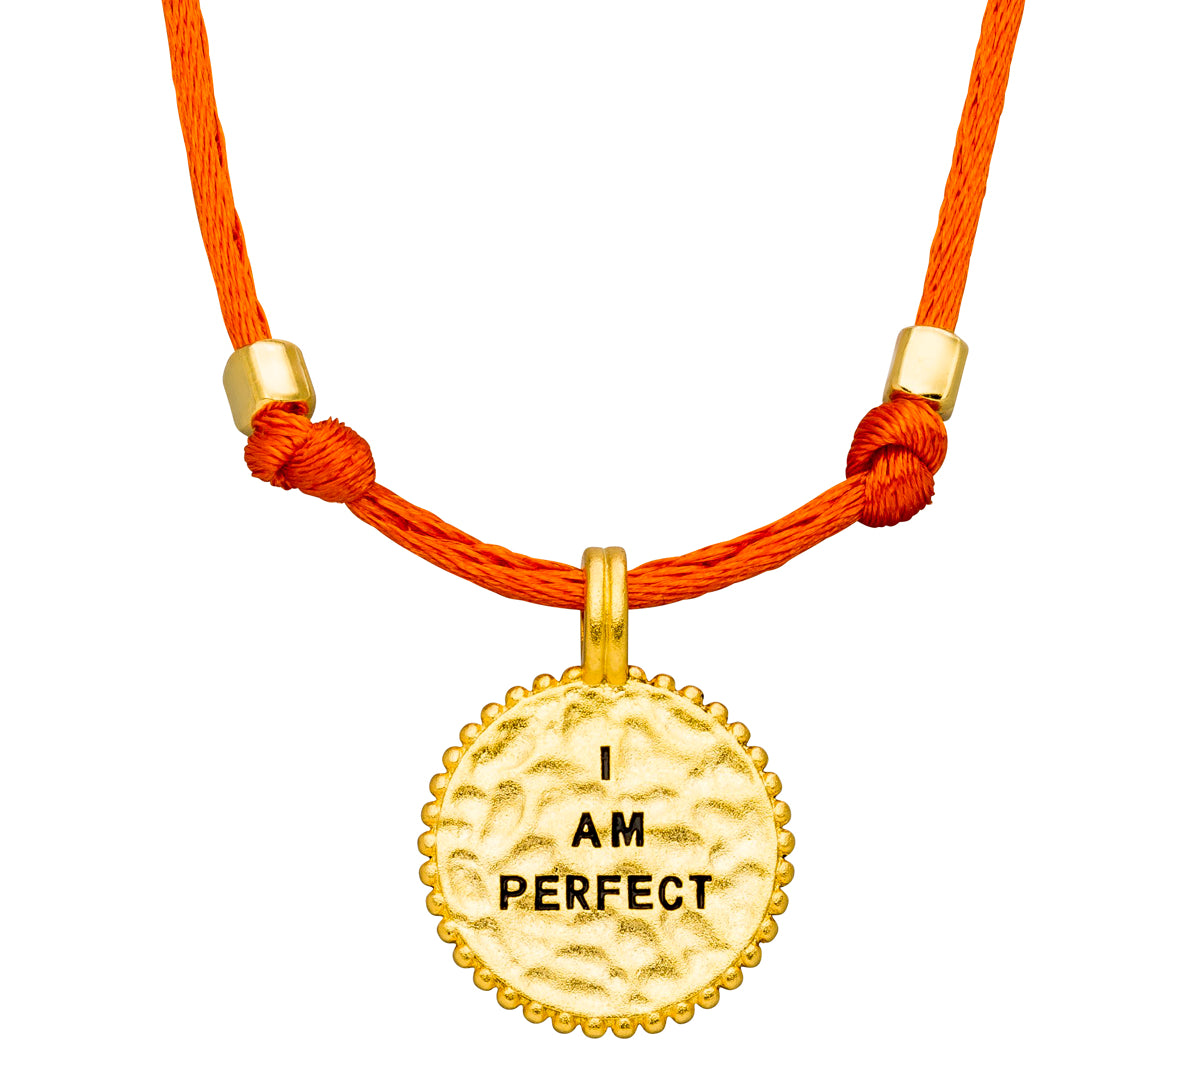 Verstellbare Amulett Kette in Orange und 925er Silber vergoldet.